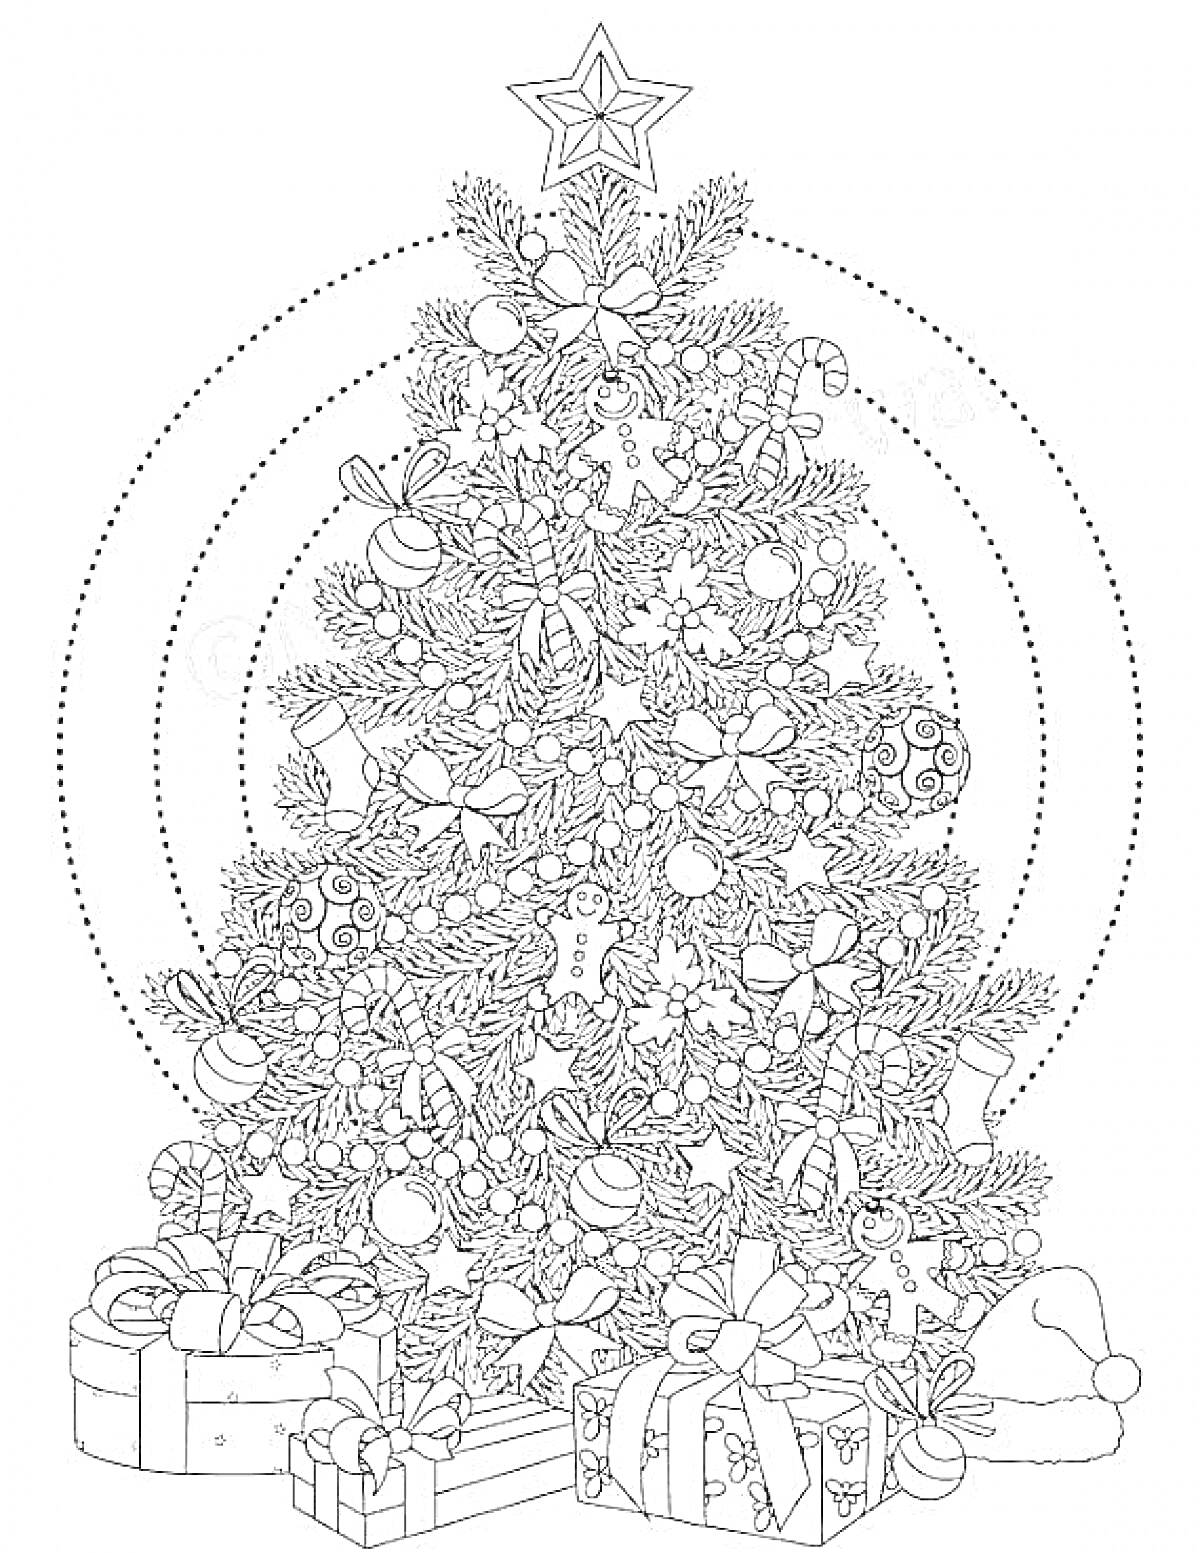 Раскраска новогодняя ёлка с подарками, шарами, звездой, бантиками, конфетами, носками, елочными игрушками и гирляндами